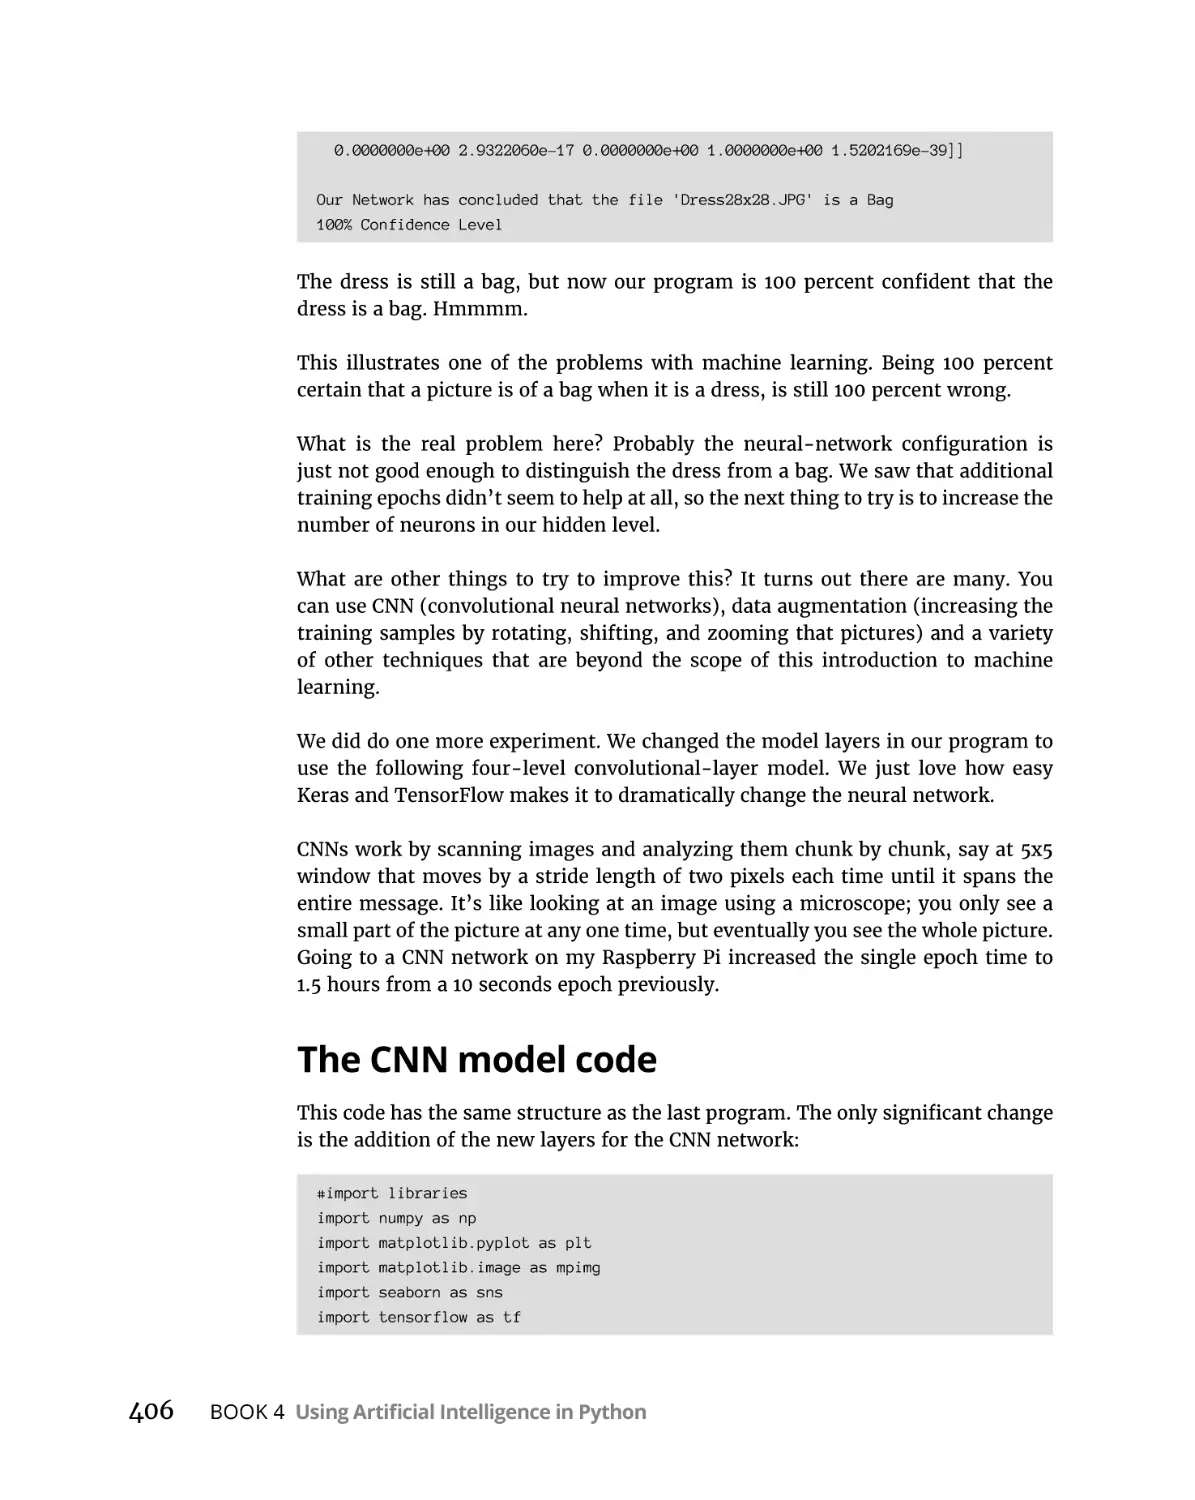 The CNN model code